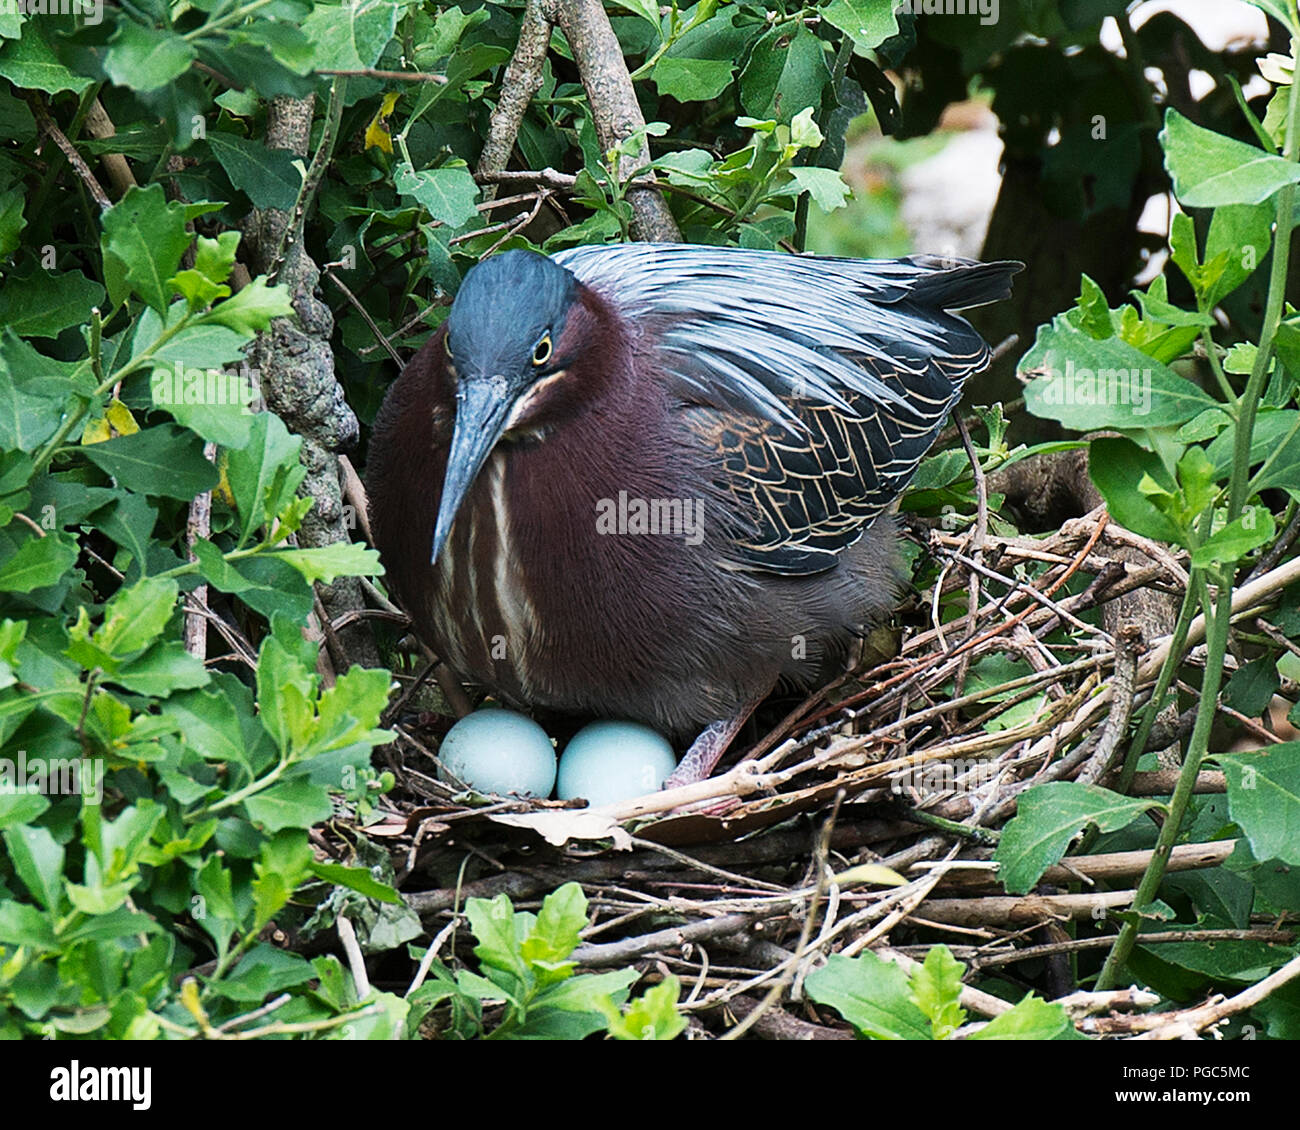 Green Heron Vogel sitzt auf ihrem Nest mit Vogel Eier mit Laub Hintergrund und Vordergrund in seiner Umwelt und Umgebung. Schöner Vogel. Stockfoto